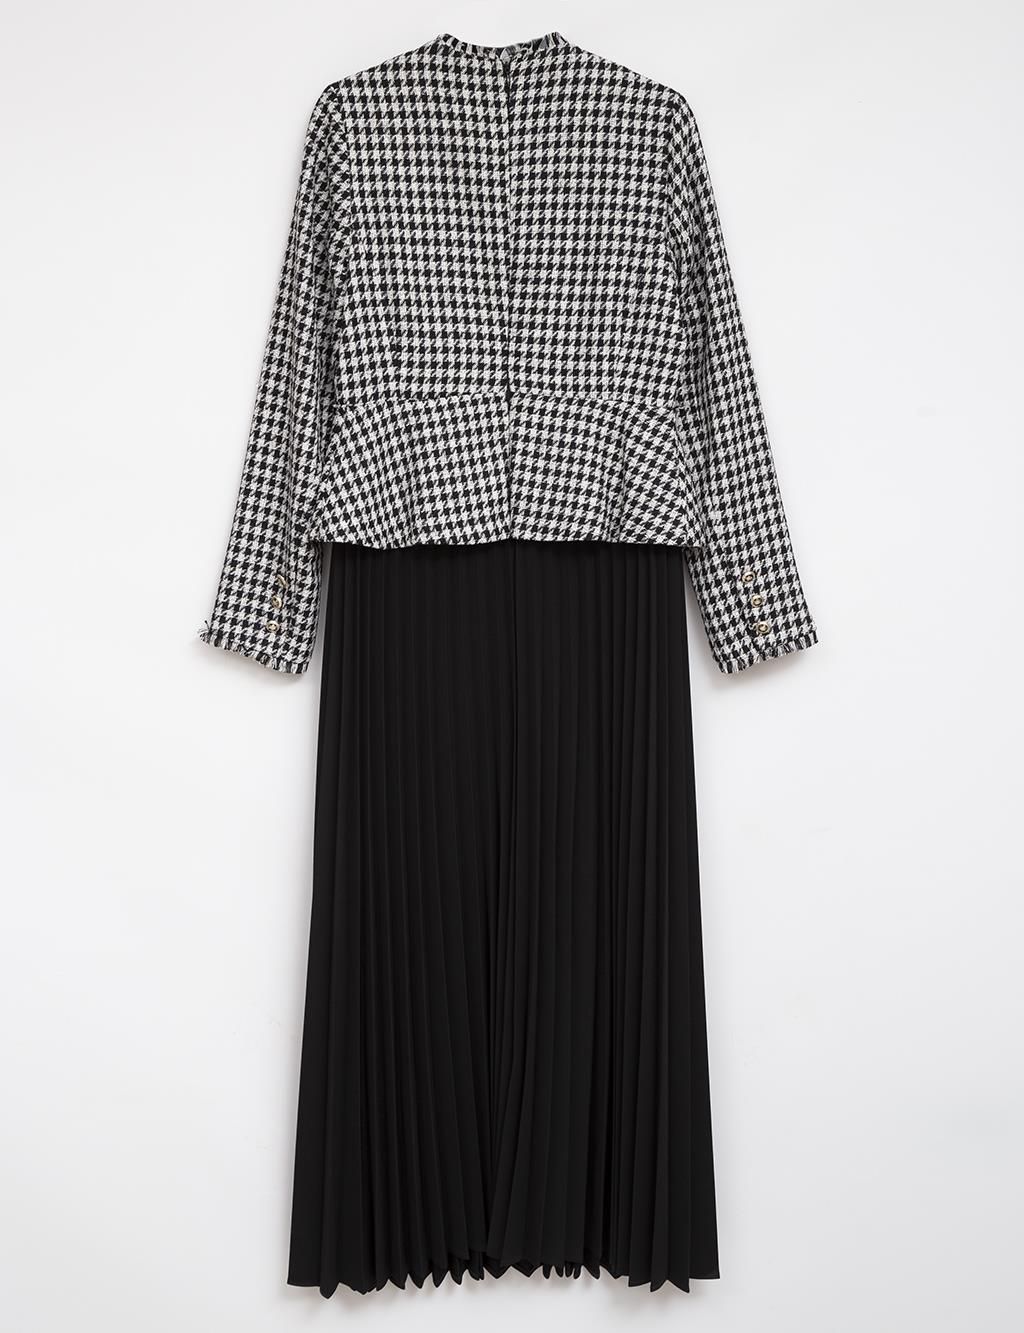 Tweed Jacket Pleated Skirt Dress Black